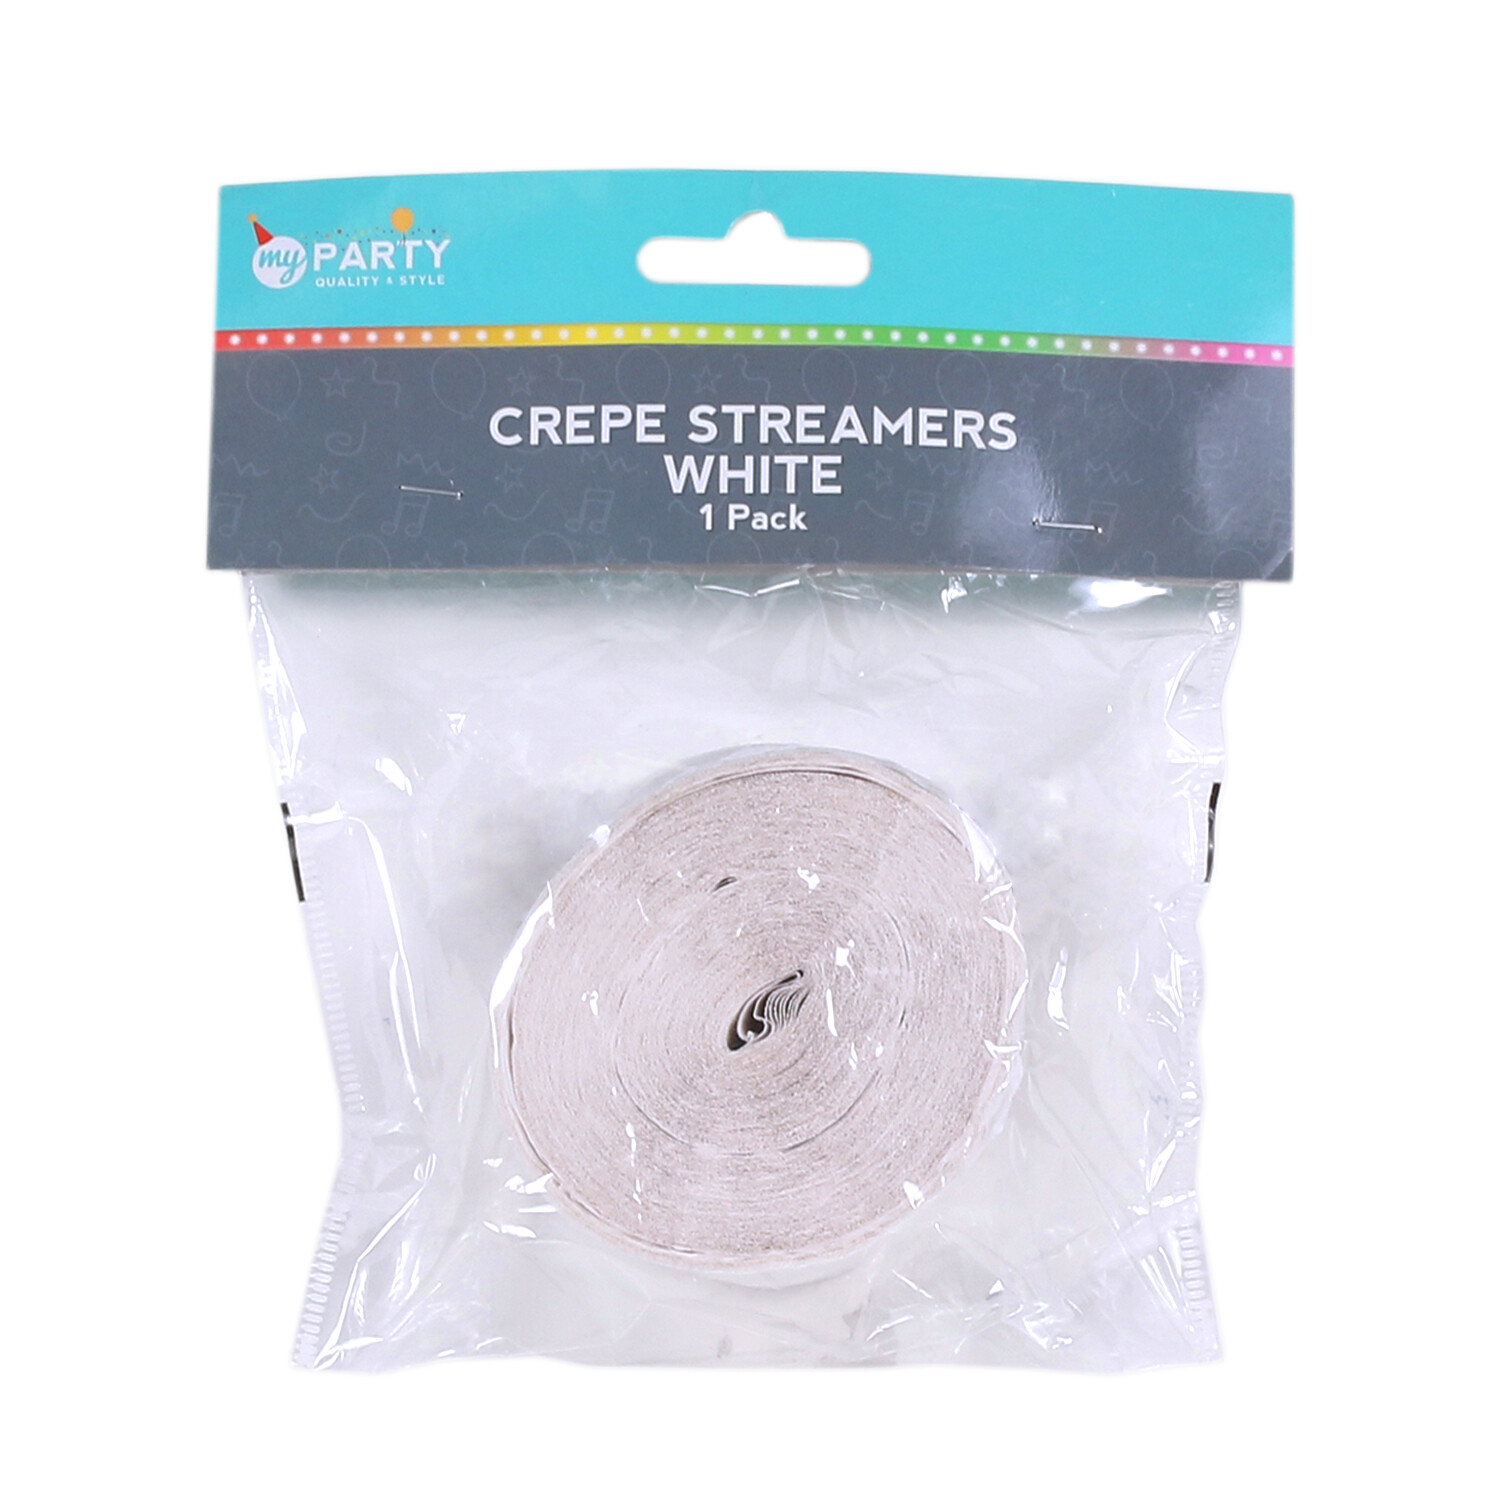 Crepe Streamer Roll - White Image